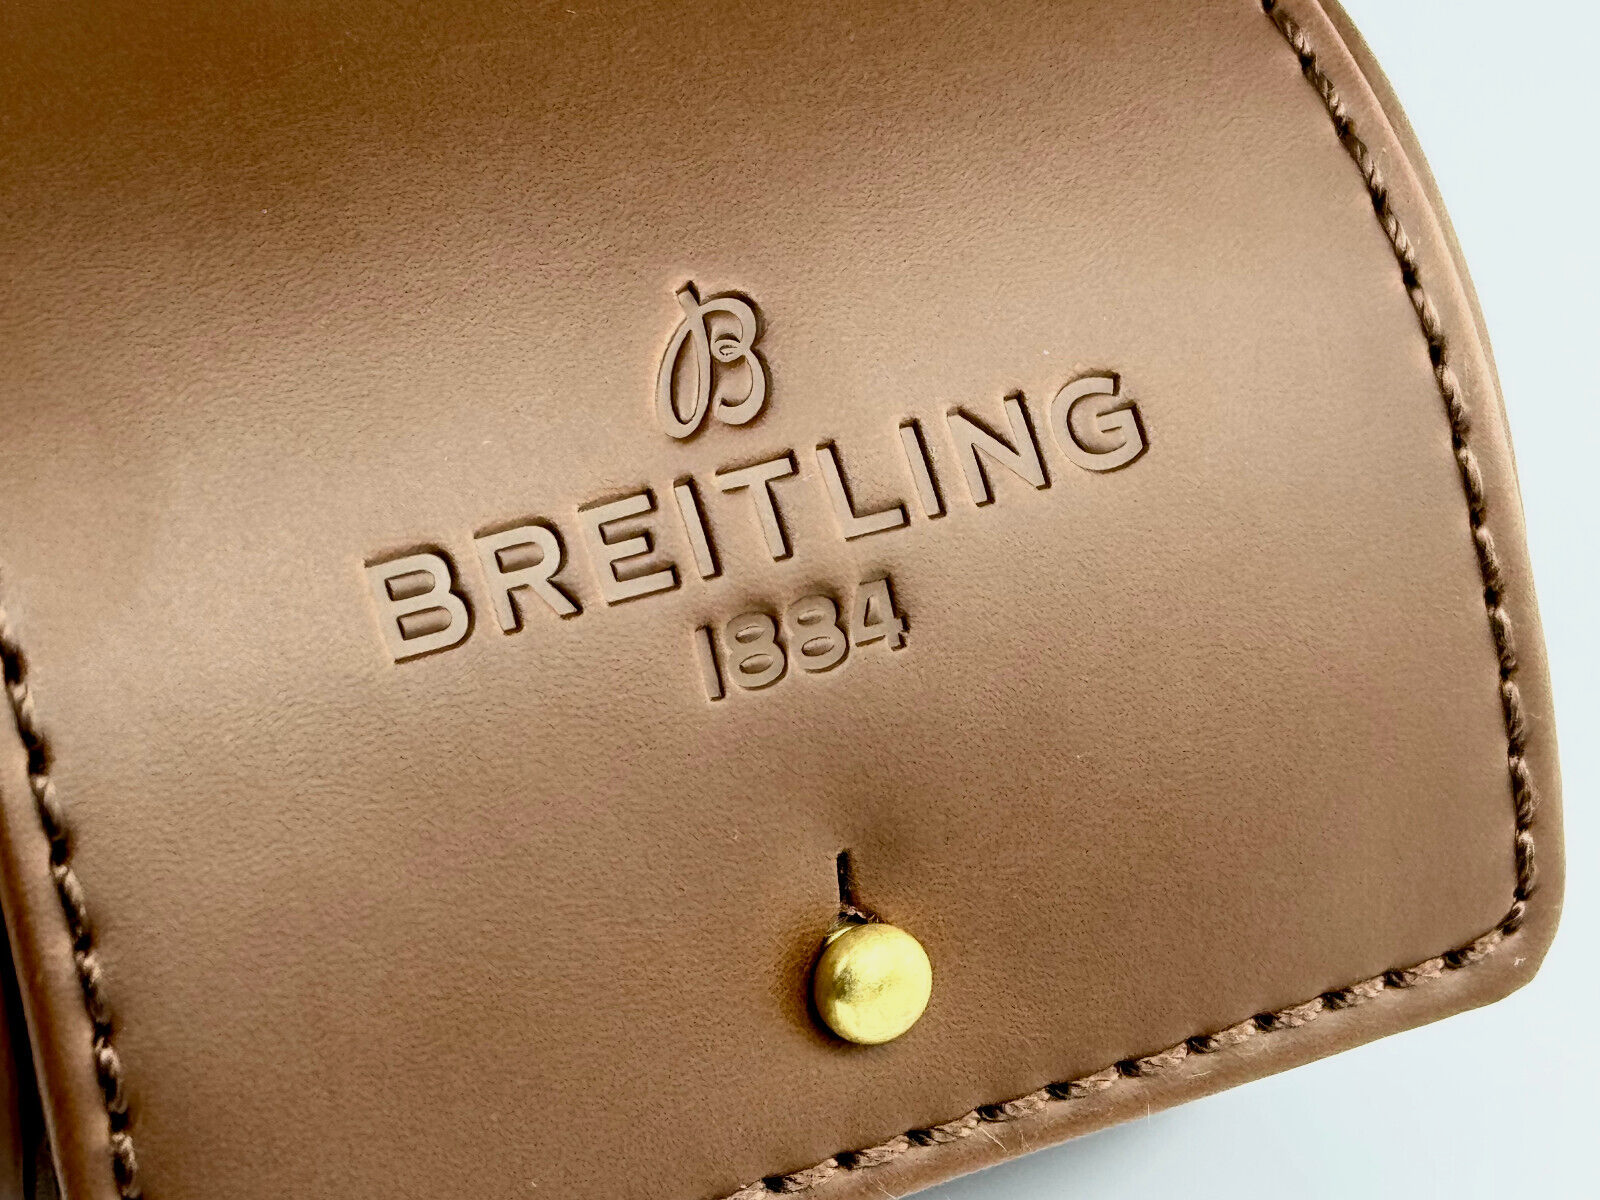 Breitling Leder Uhrenetui Braun